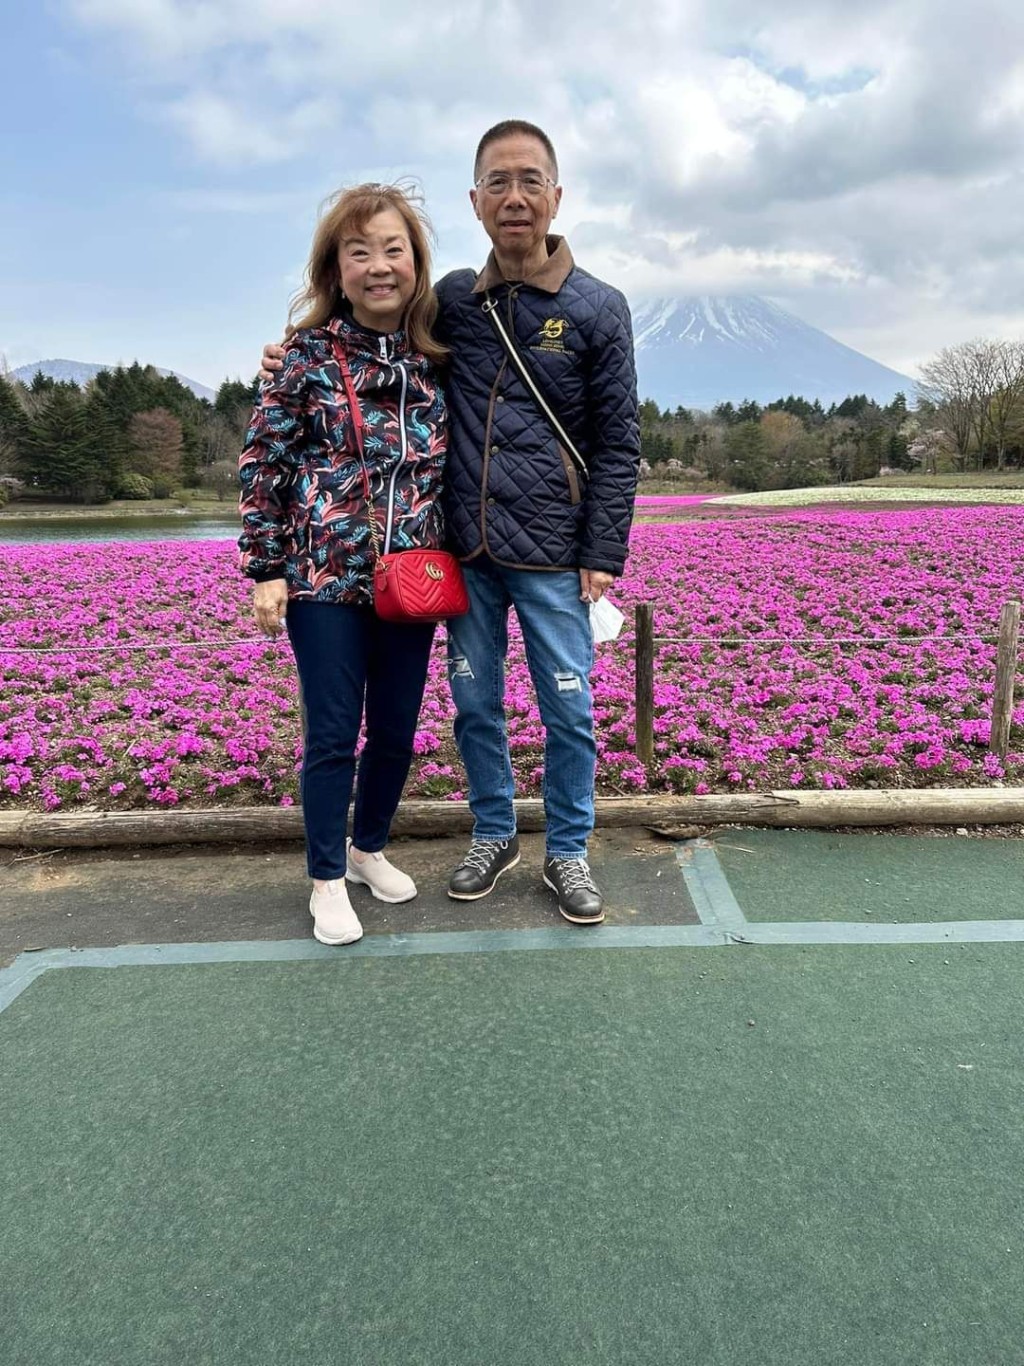  「當家」系馬主黃蔡秀文與丈夫黃清華上周前往日本旅遊。